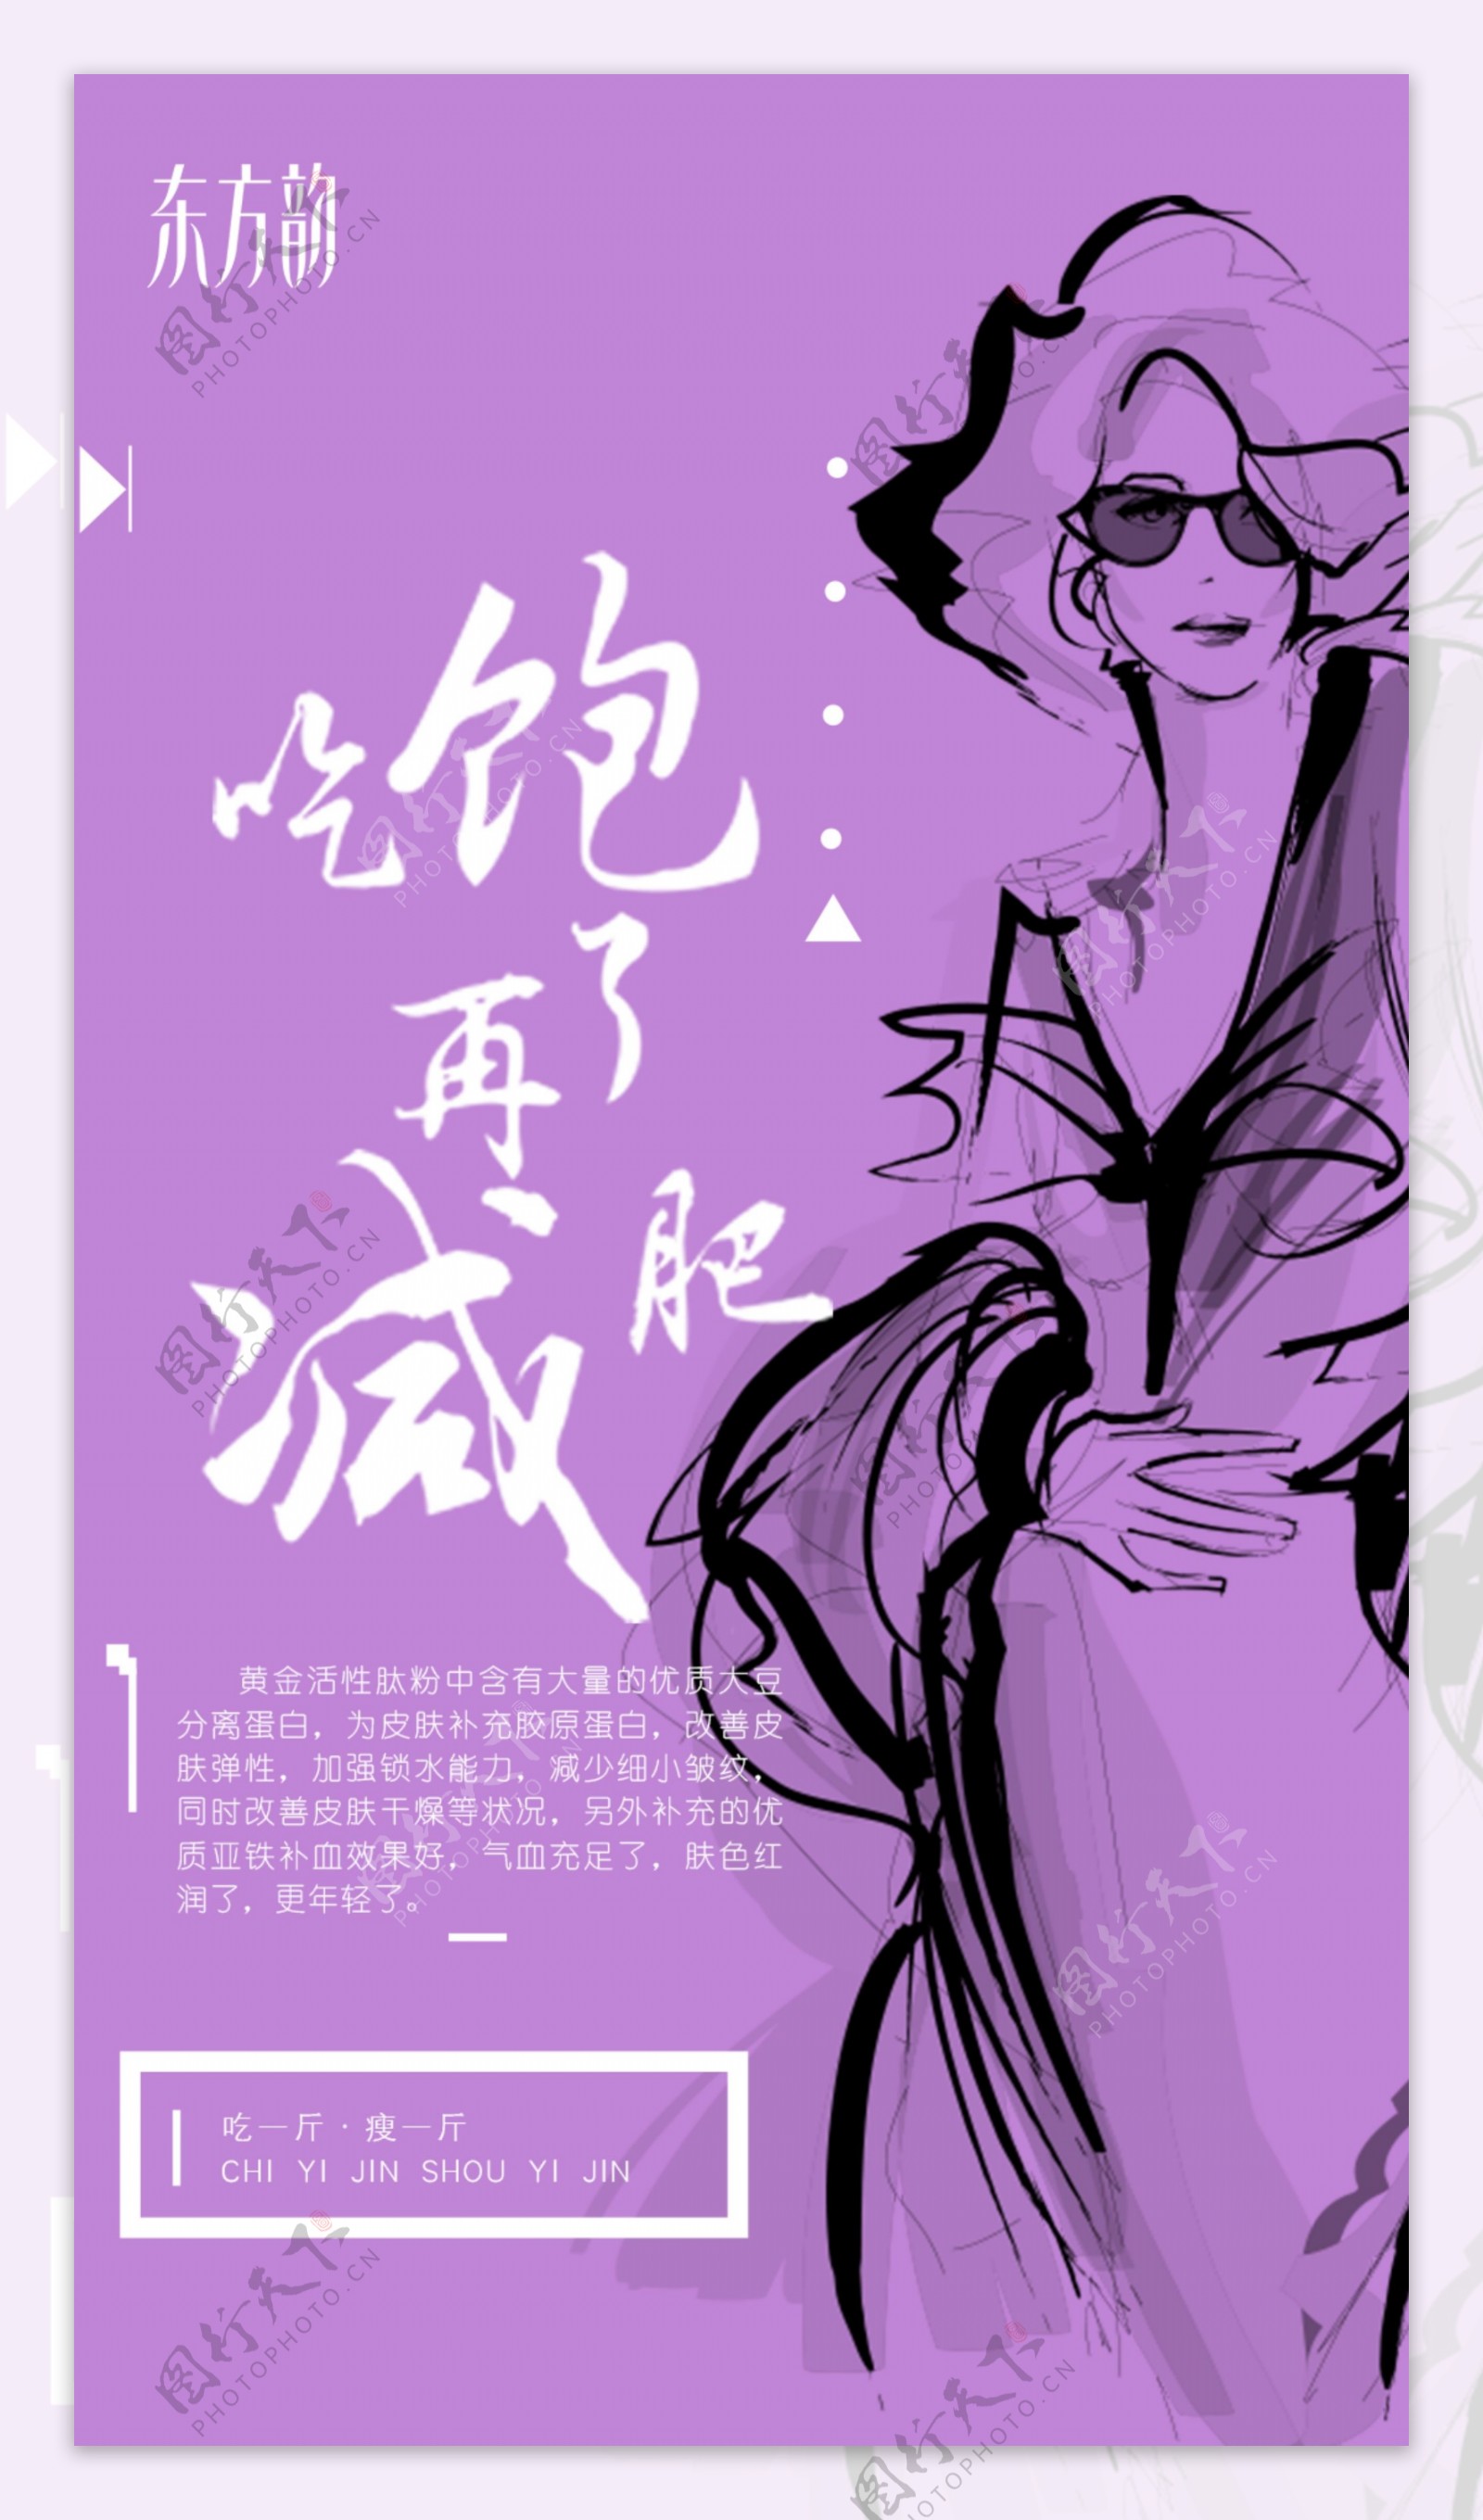 东方韵轻脂组合轻脂米紫色美女中国风海报